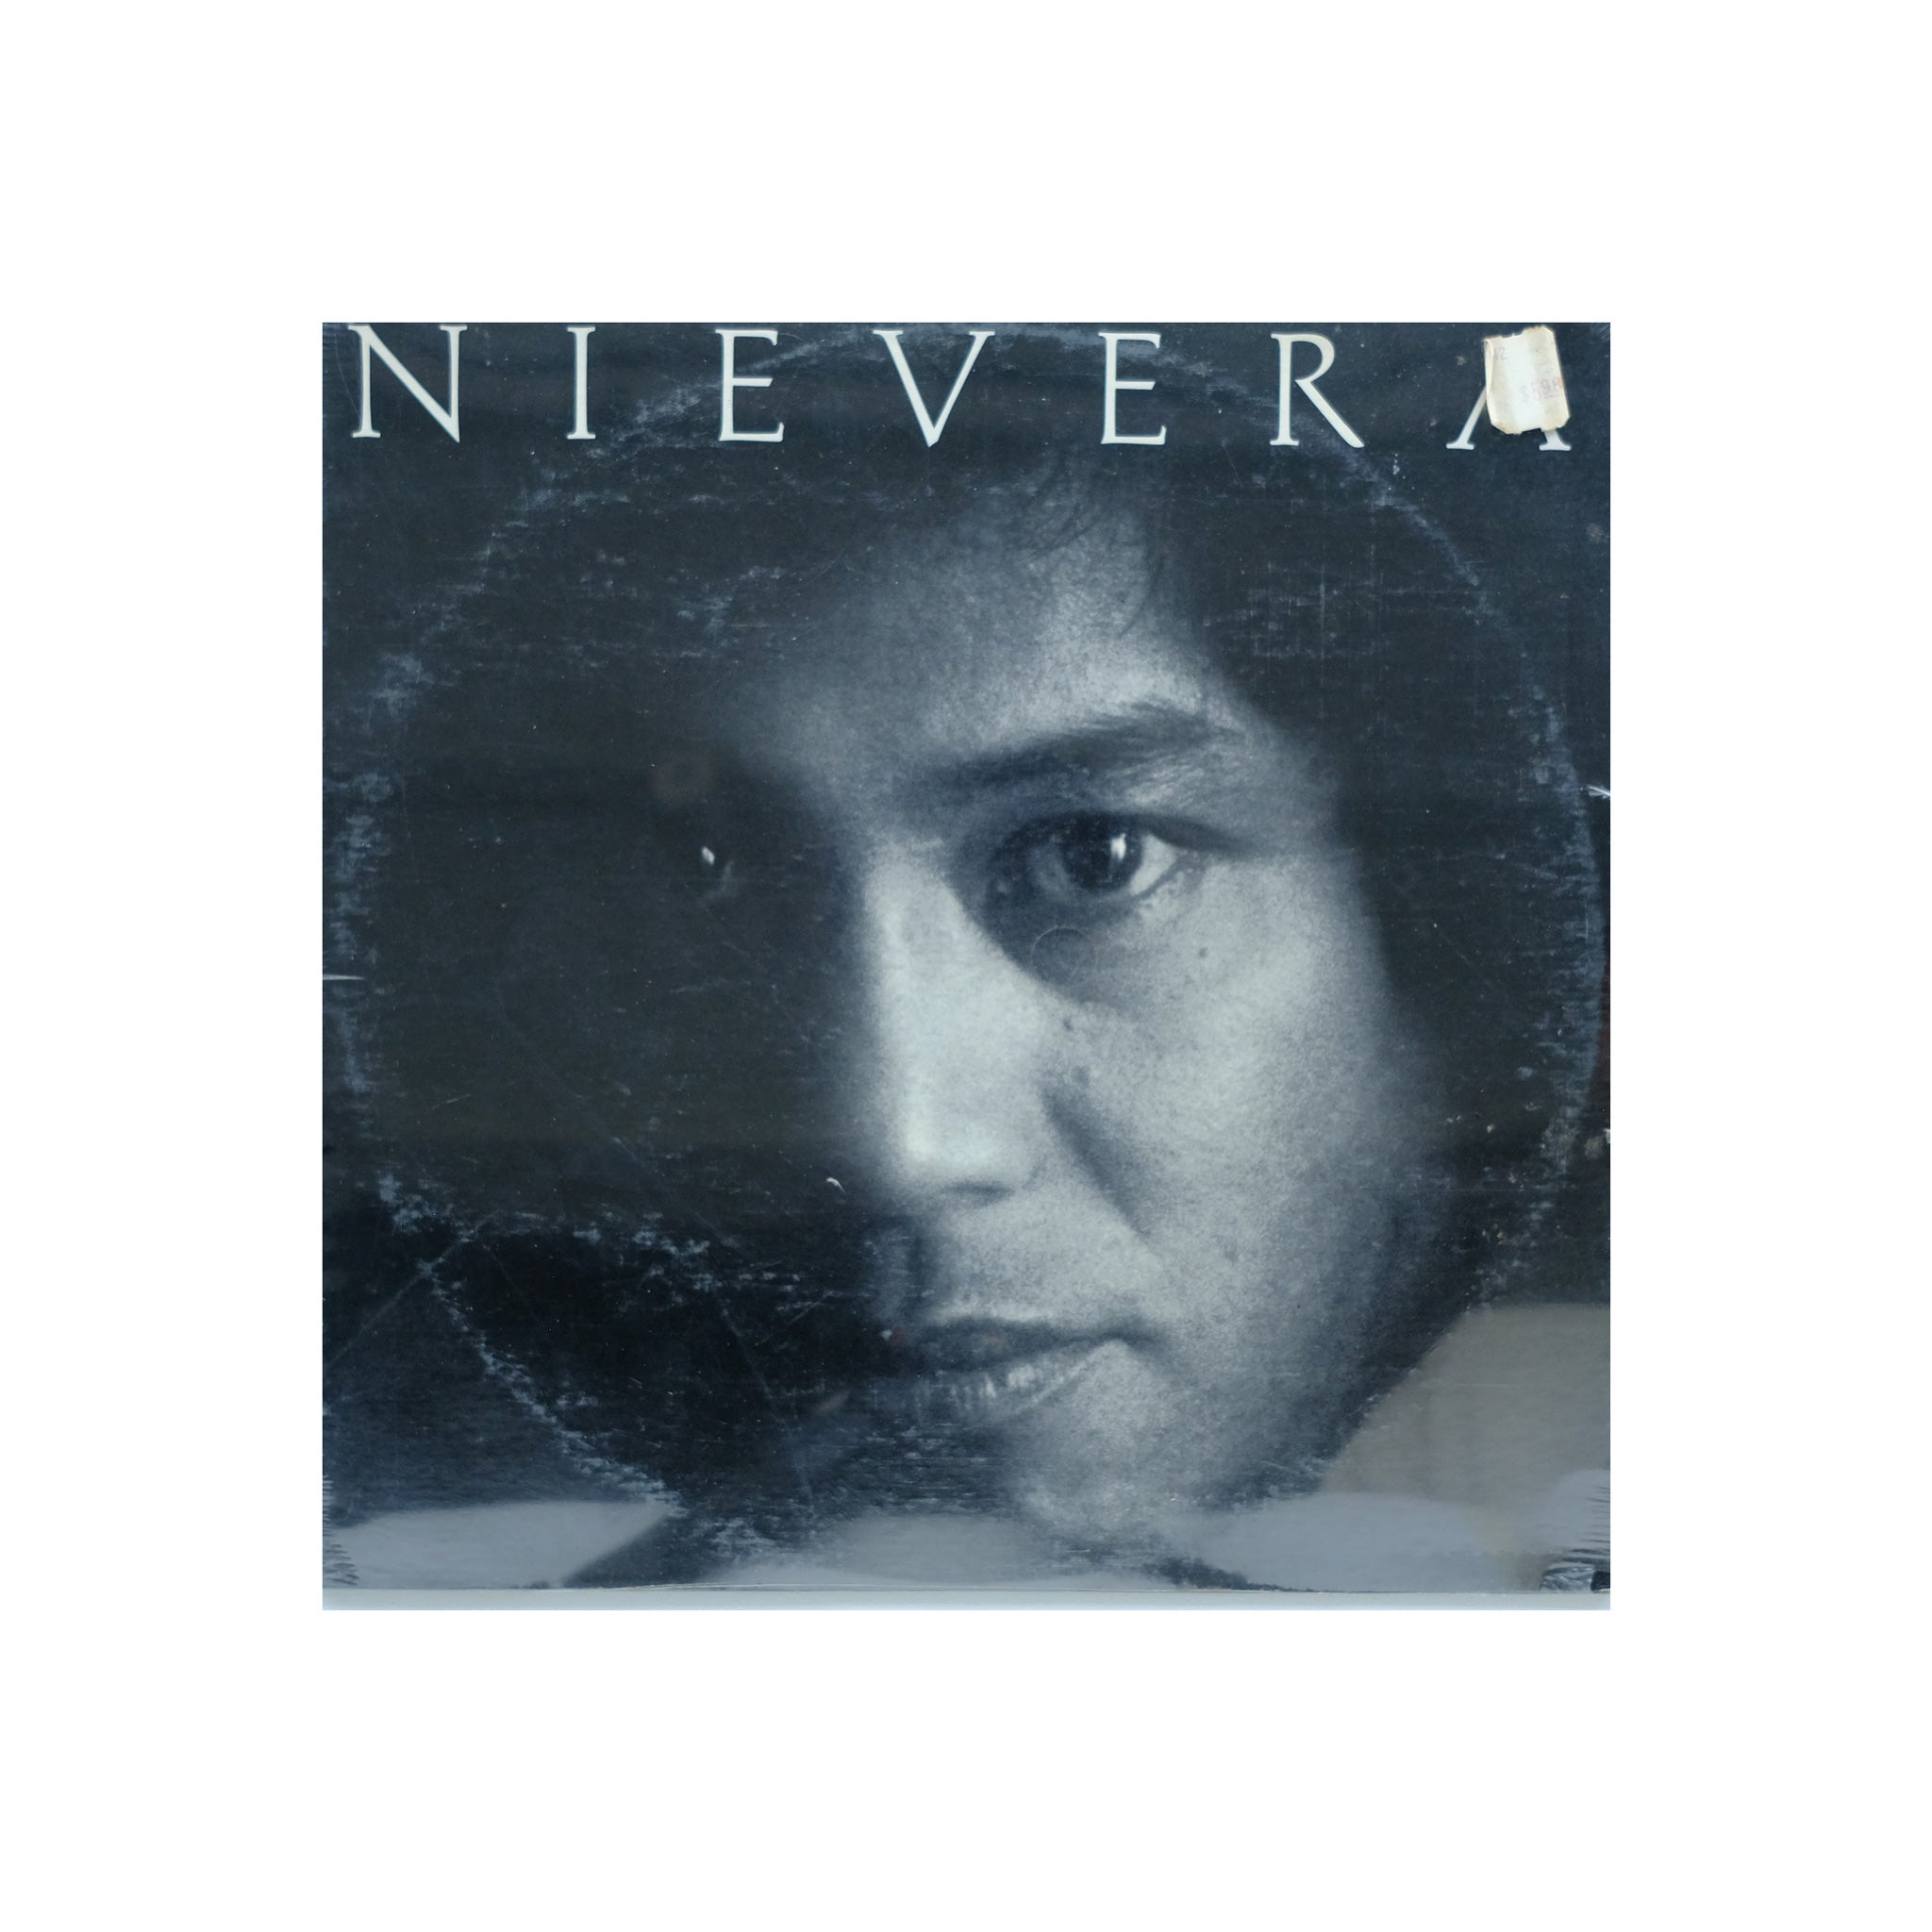 Roberto Nievera - Nievera [sealed]